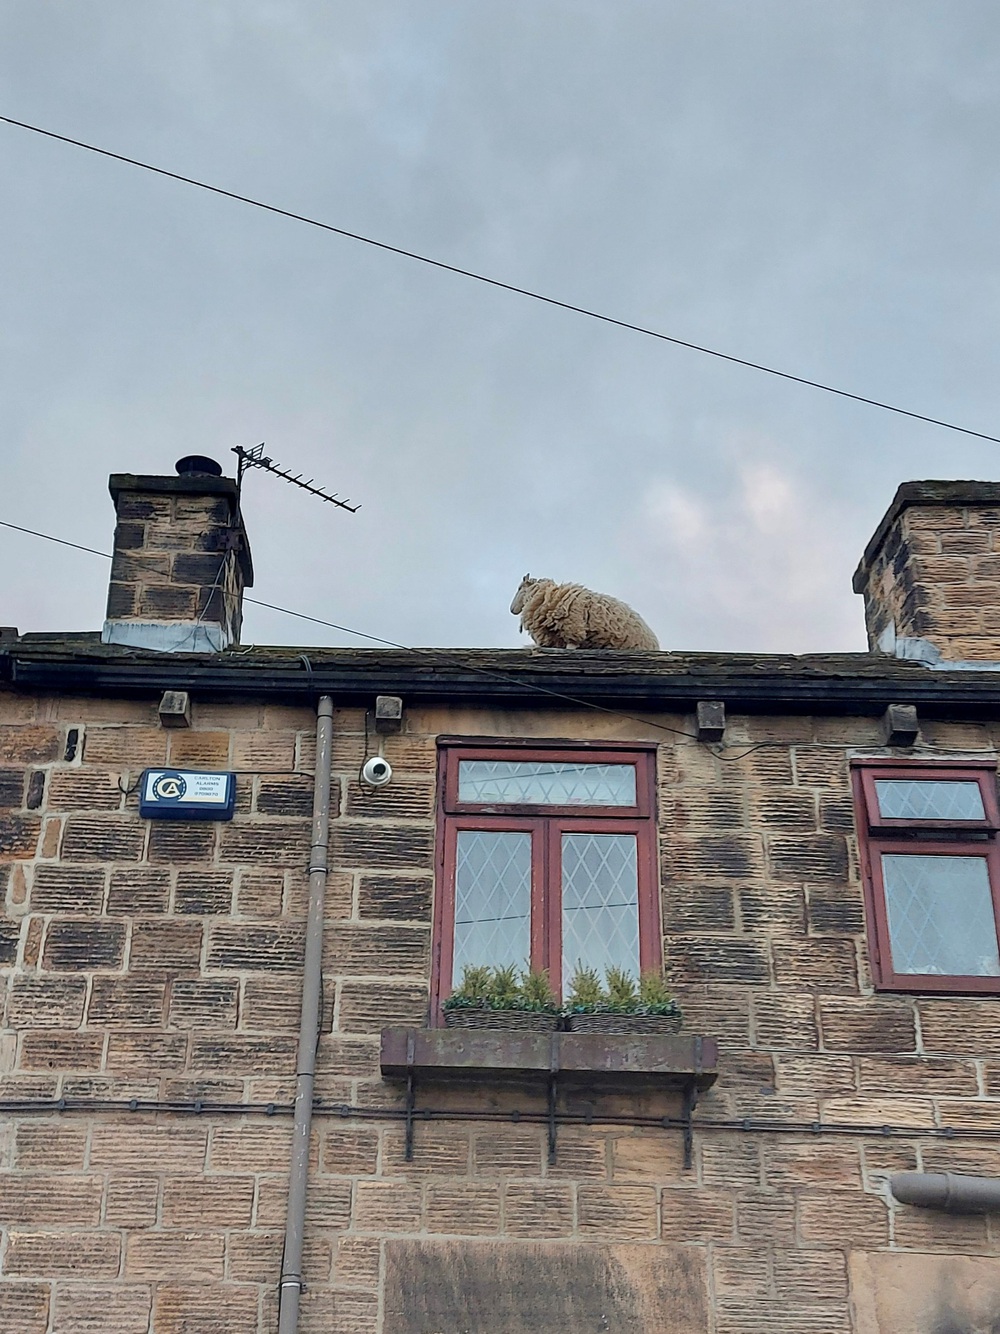 Giải cứu đàn cừu mắc cạn trên mái nhà ở Anh - Ảnh 3.